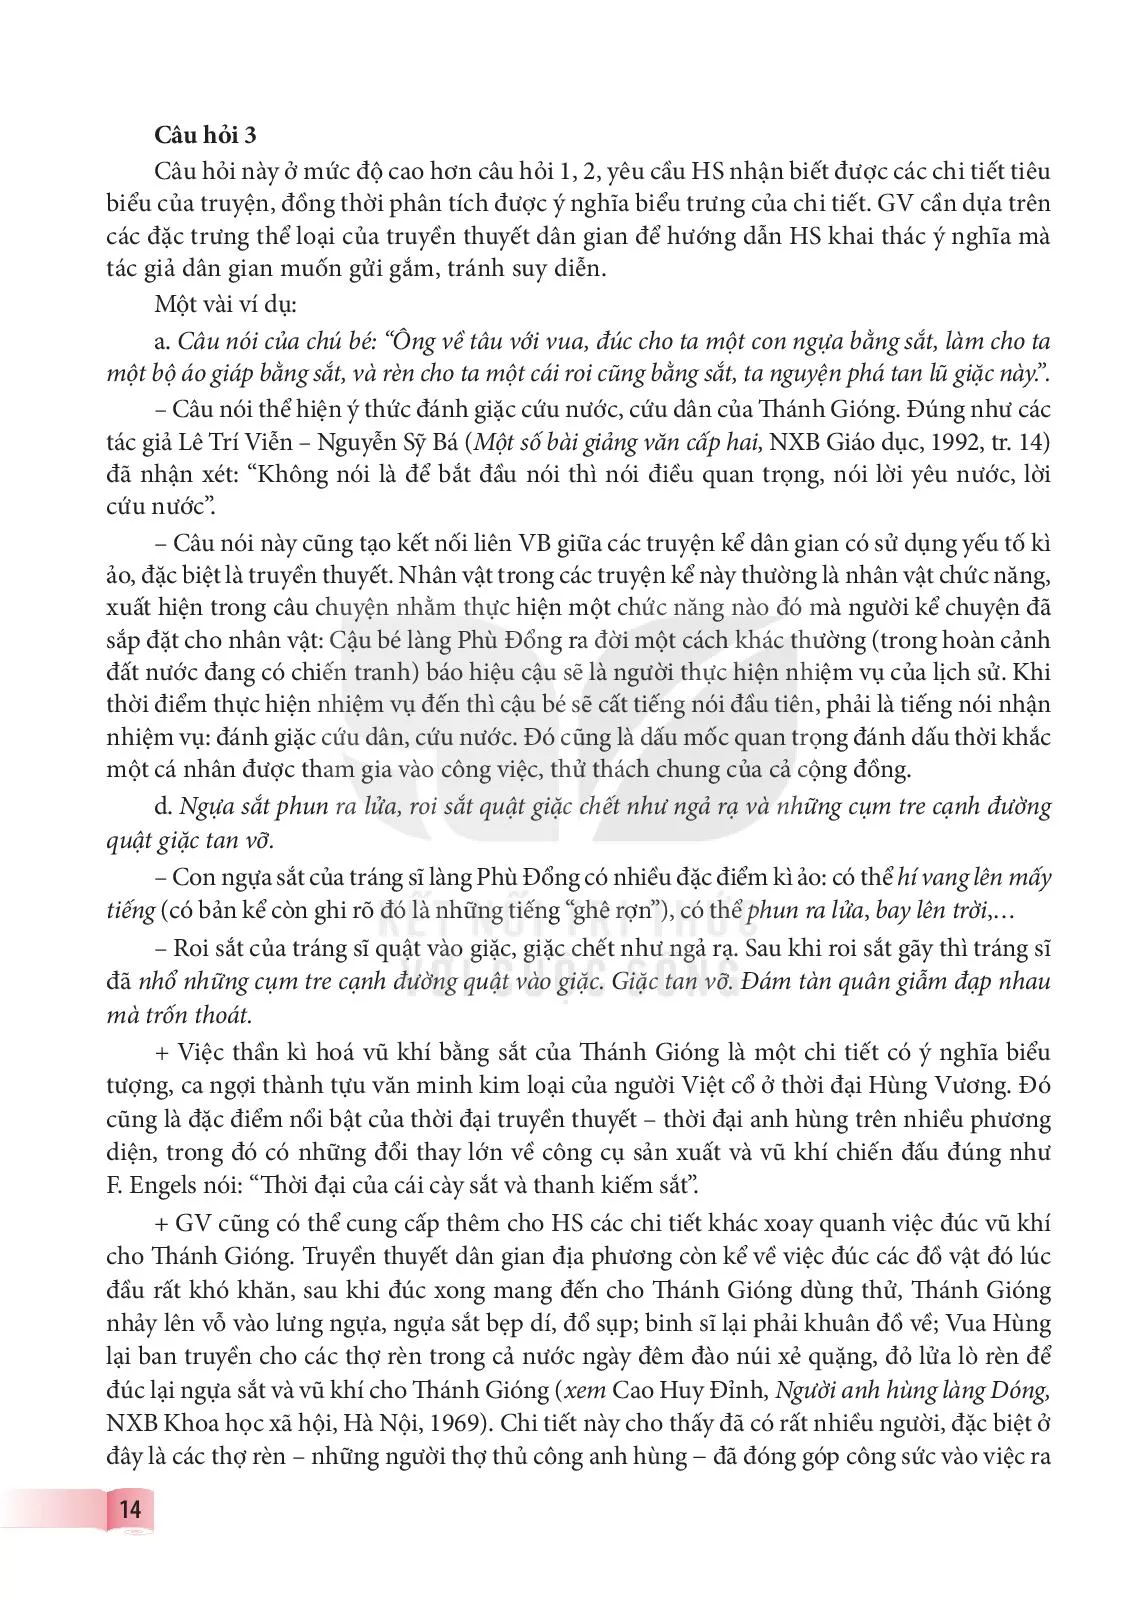 Đọc văn bản và Thực hành tiếng Việt 